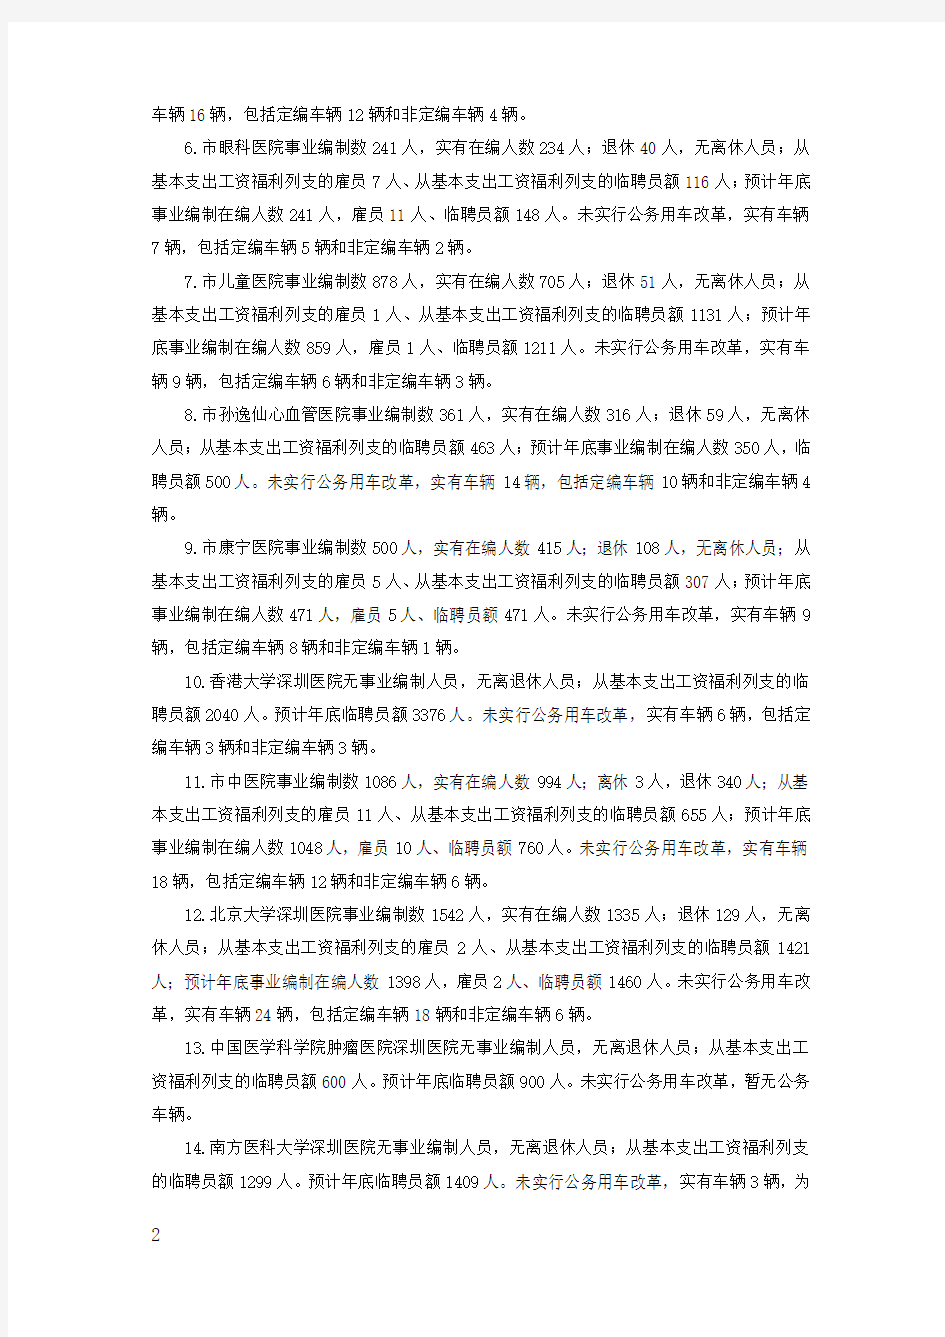 2018年深圳市公立医院管理中心部门预算